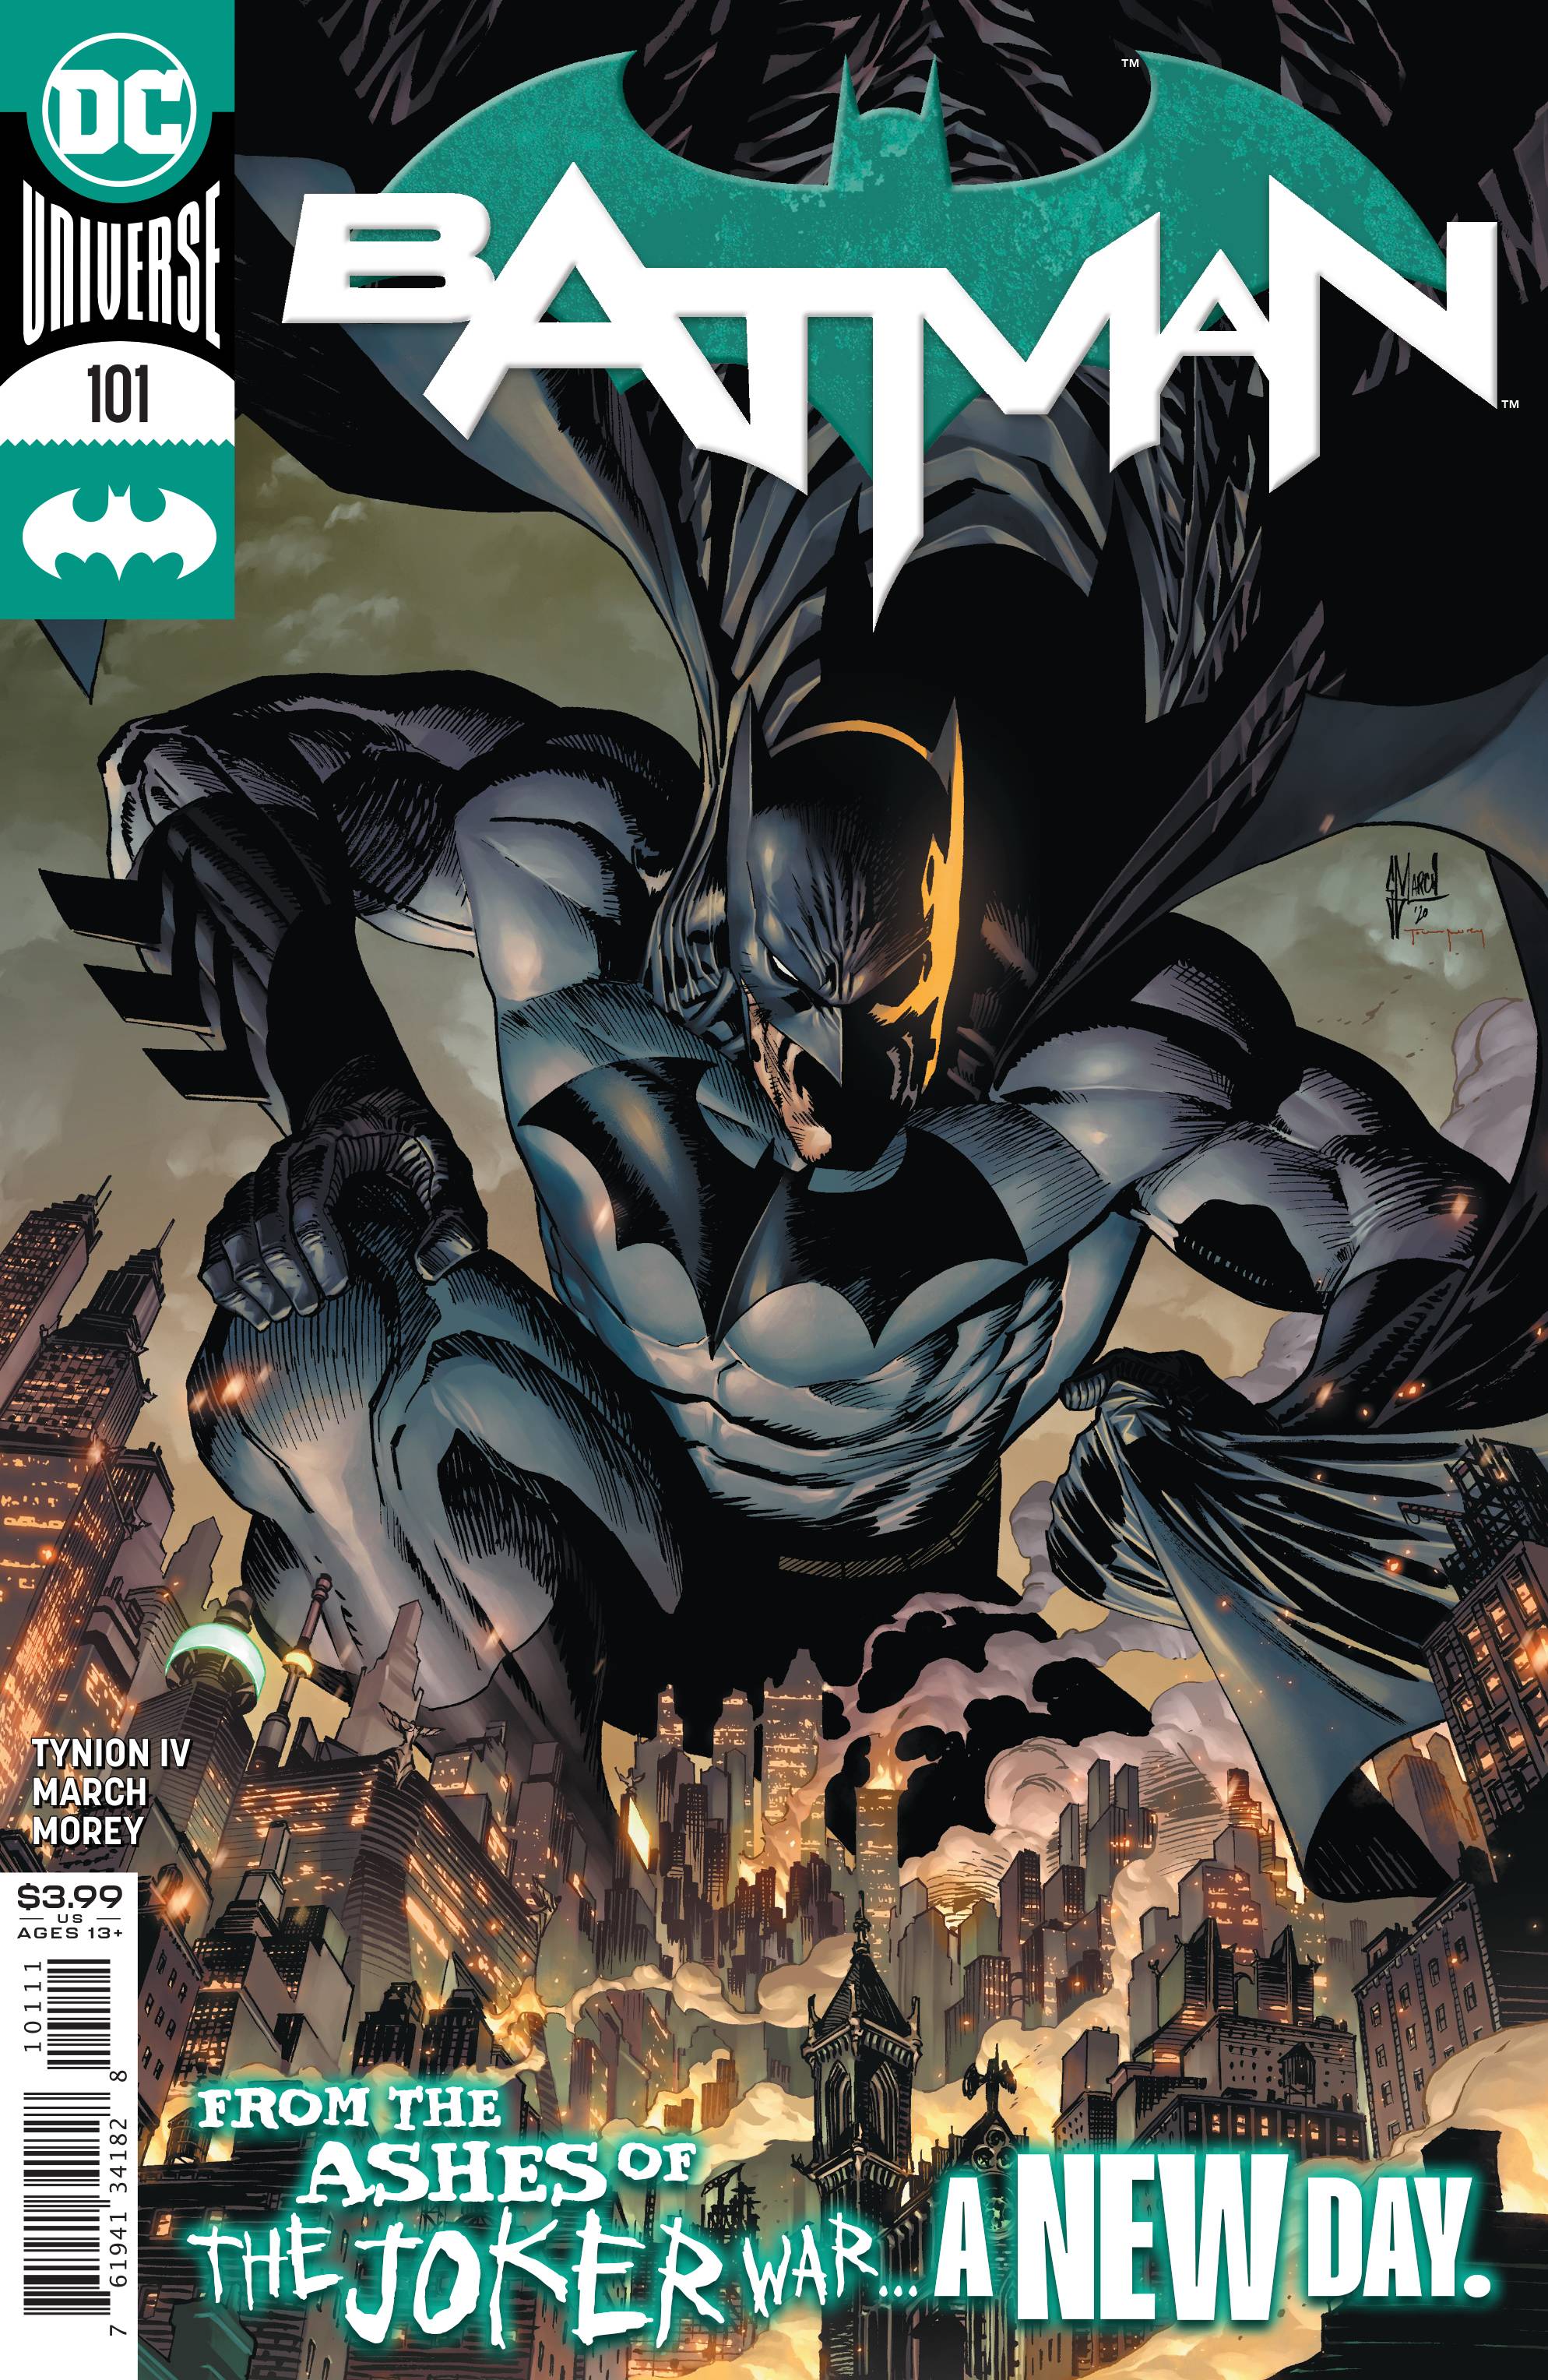 BATMAN #101 JOKER WAR | L.A. Mood Comics and Games